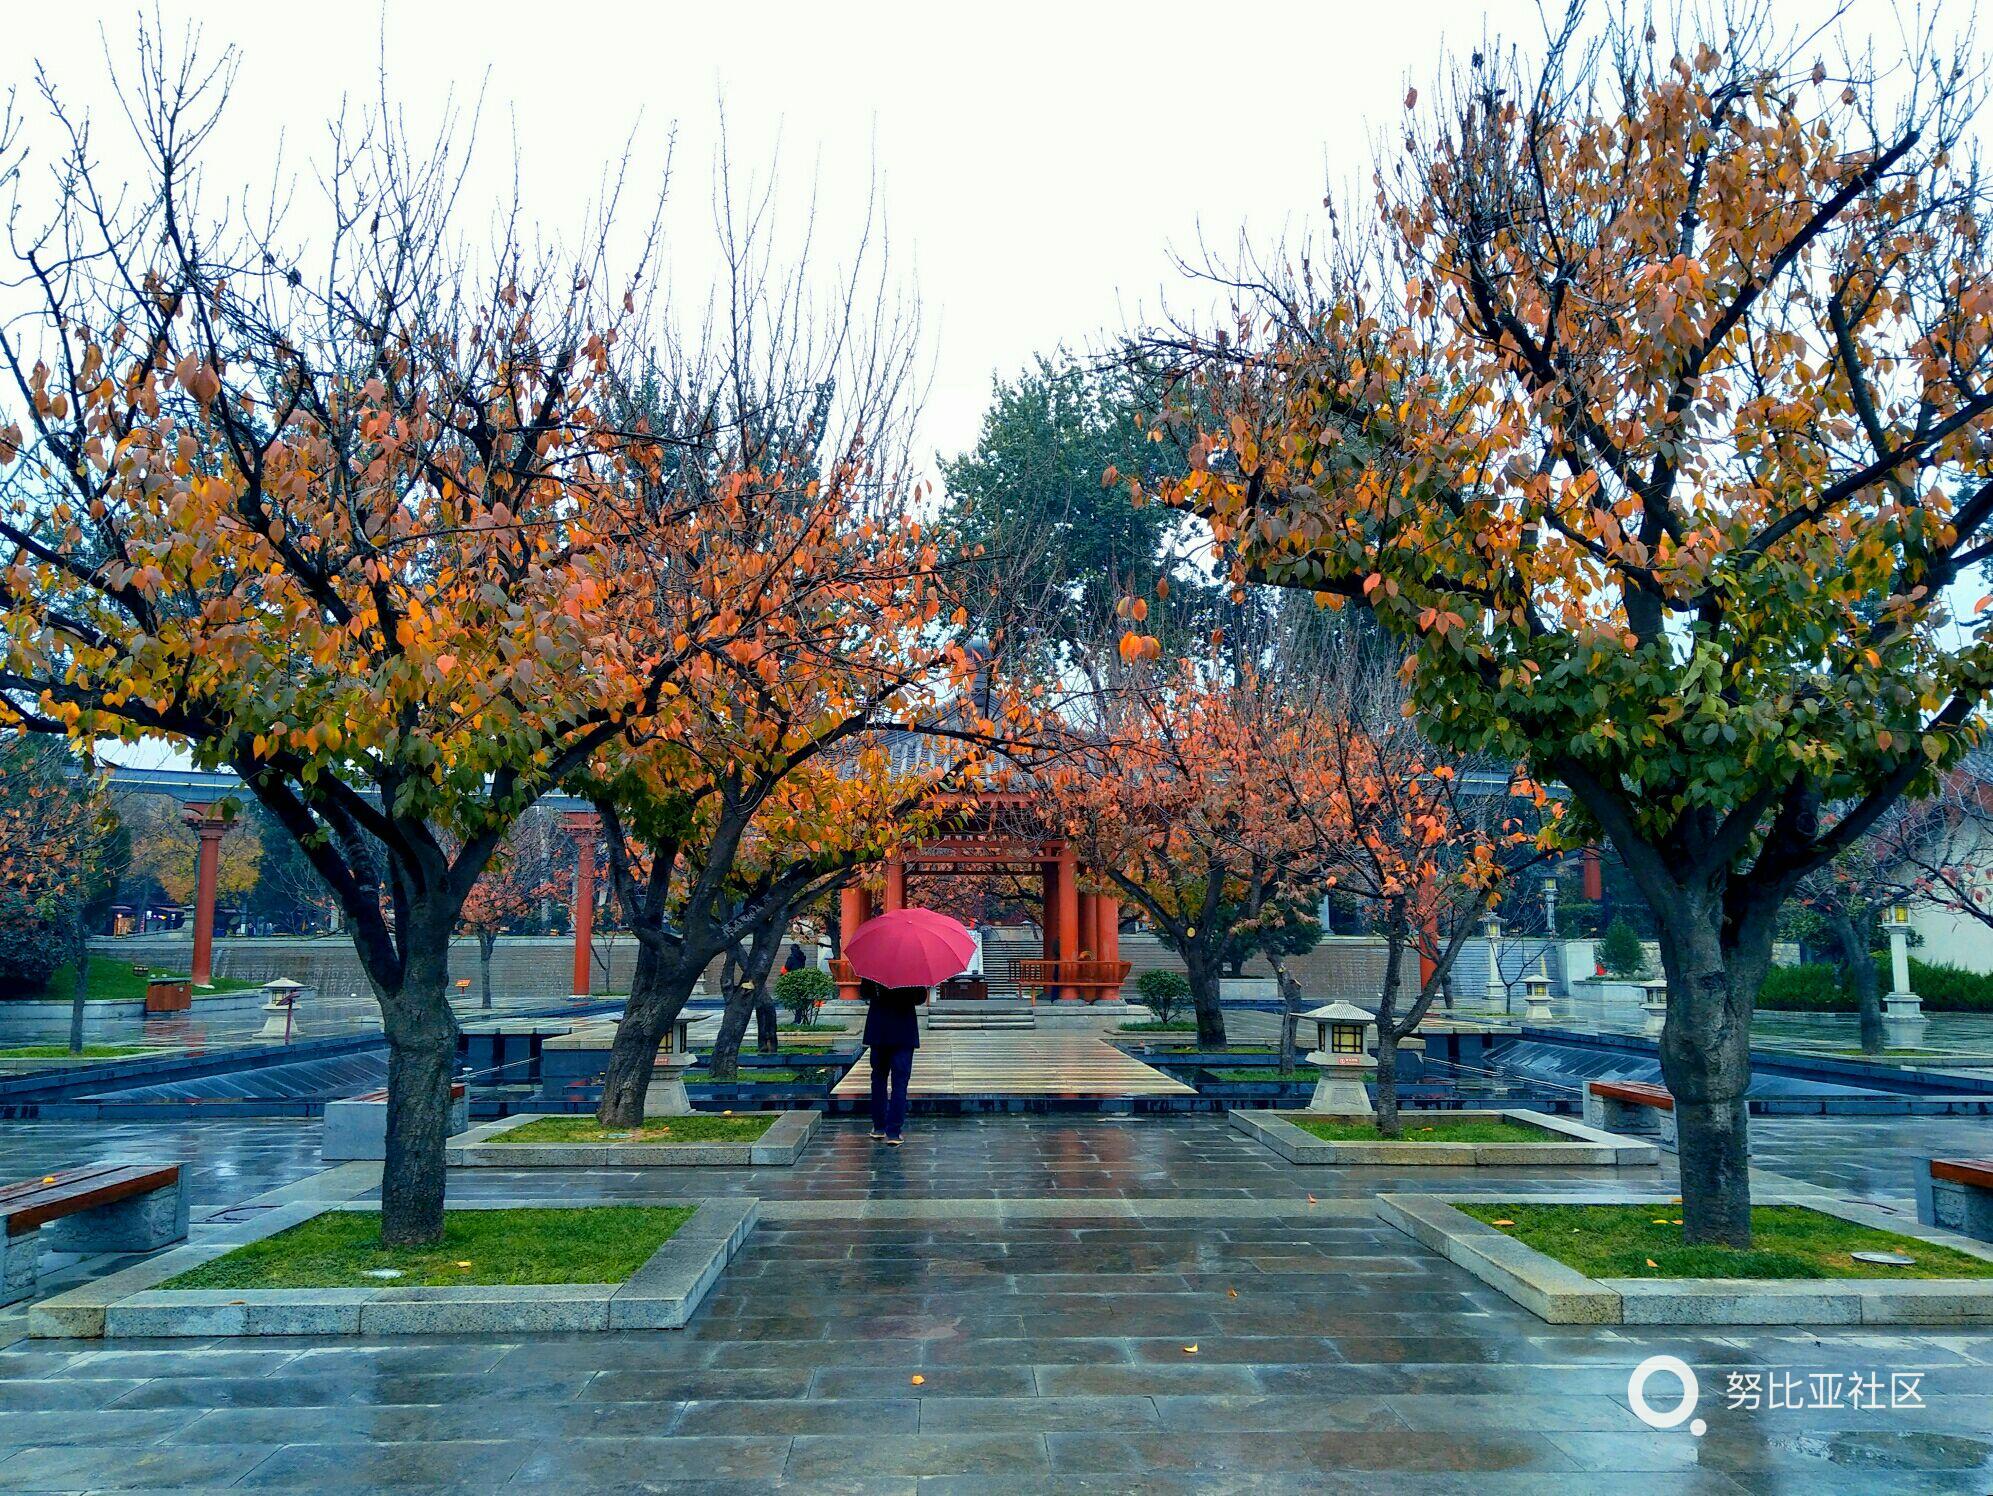 樱花树的秋天,nubiaz17mini拍摄